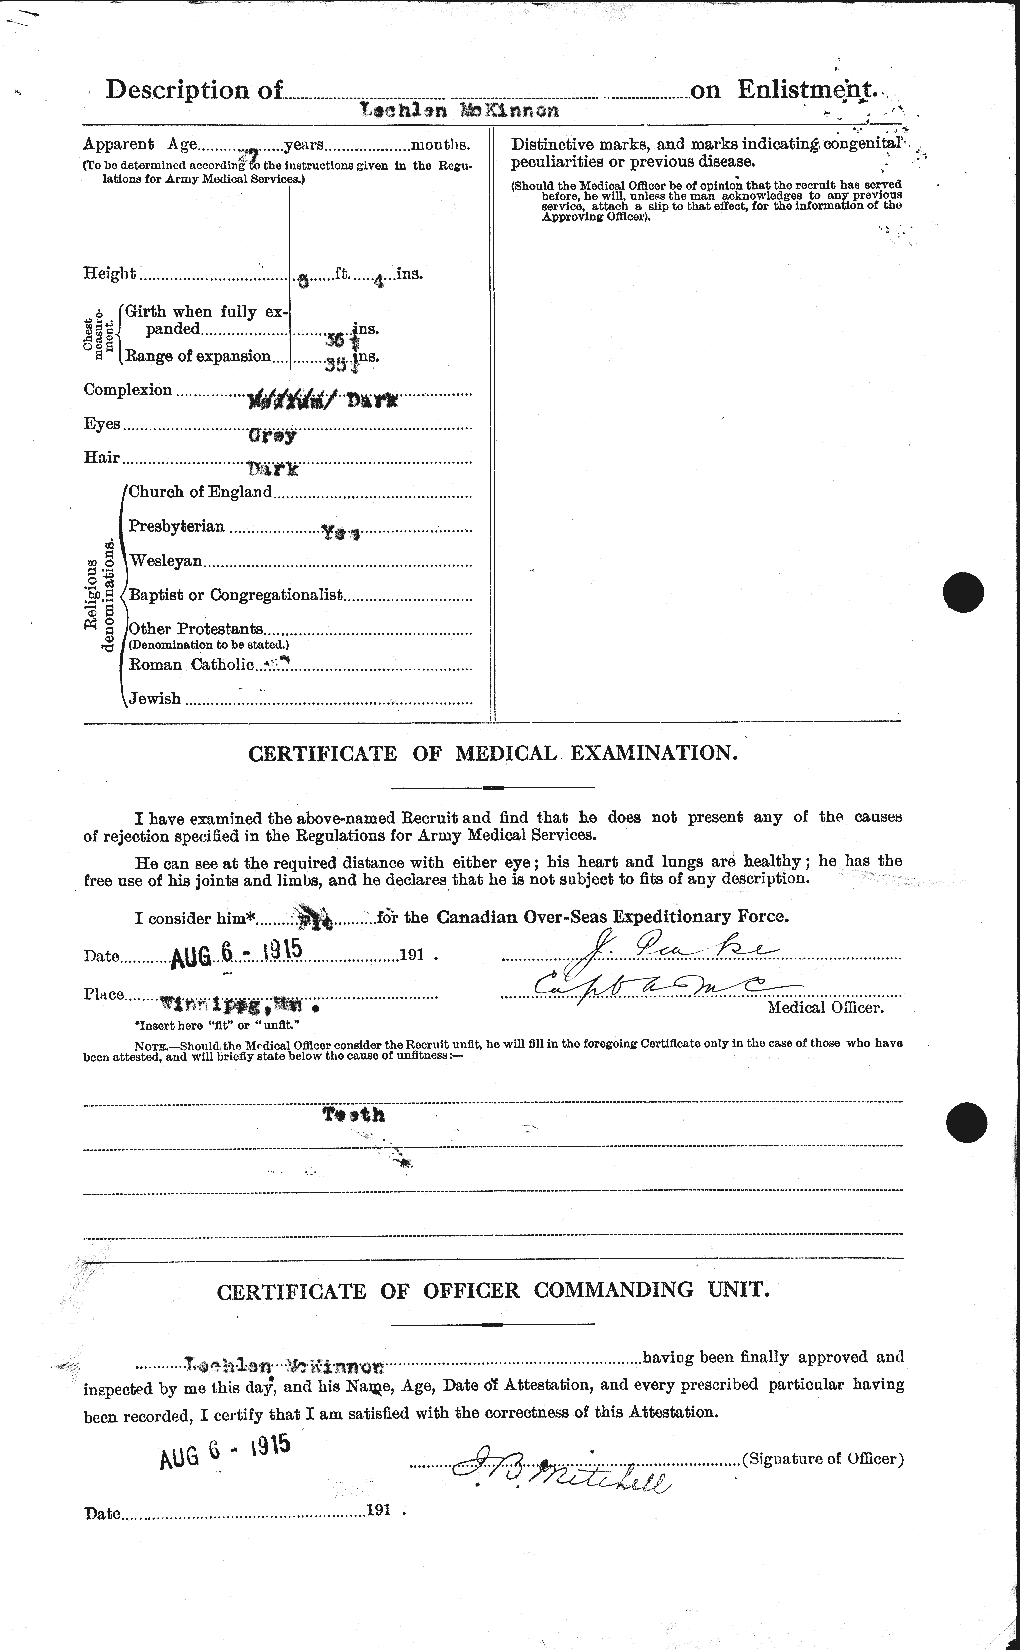 Dossiers du Personnel de la Première Guerre mondiale - CEC 533108b